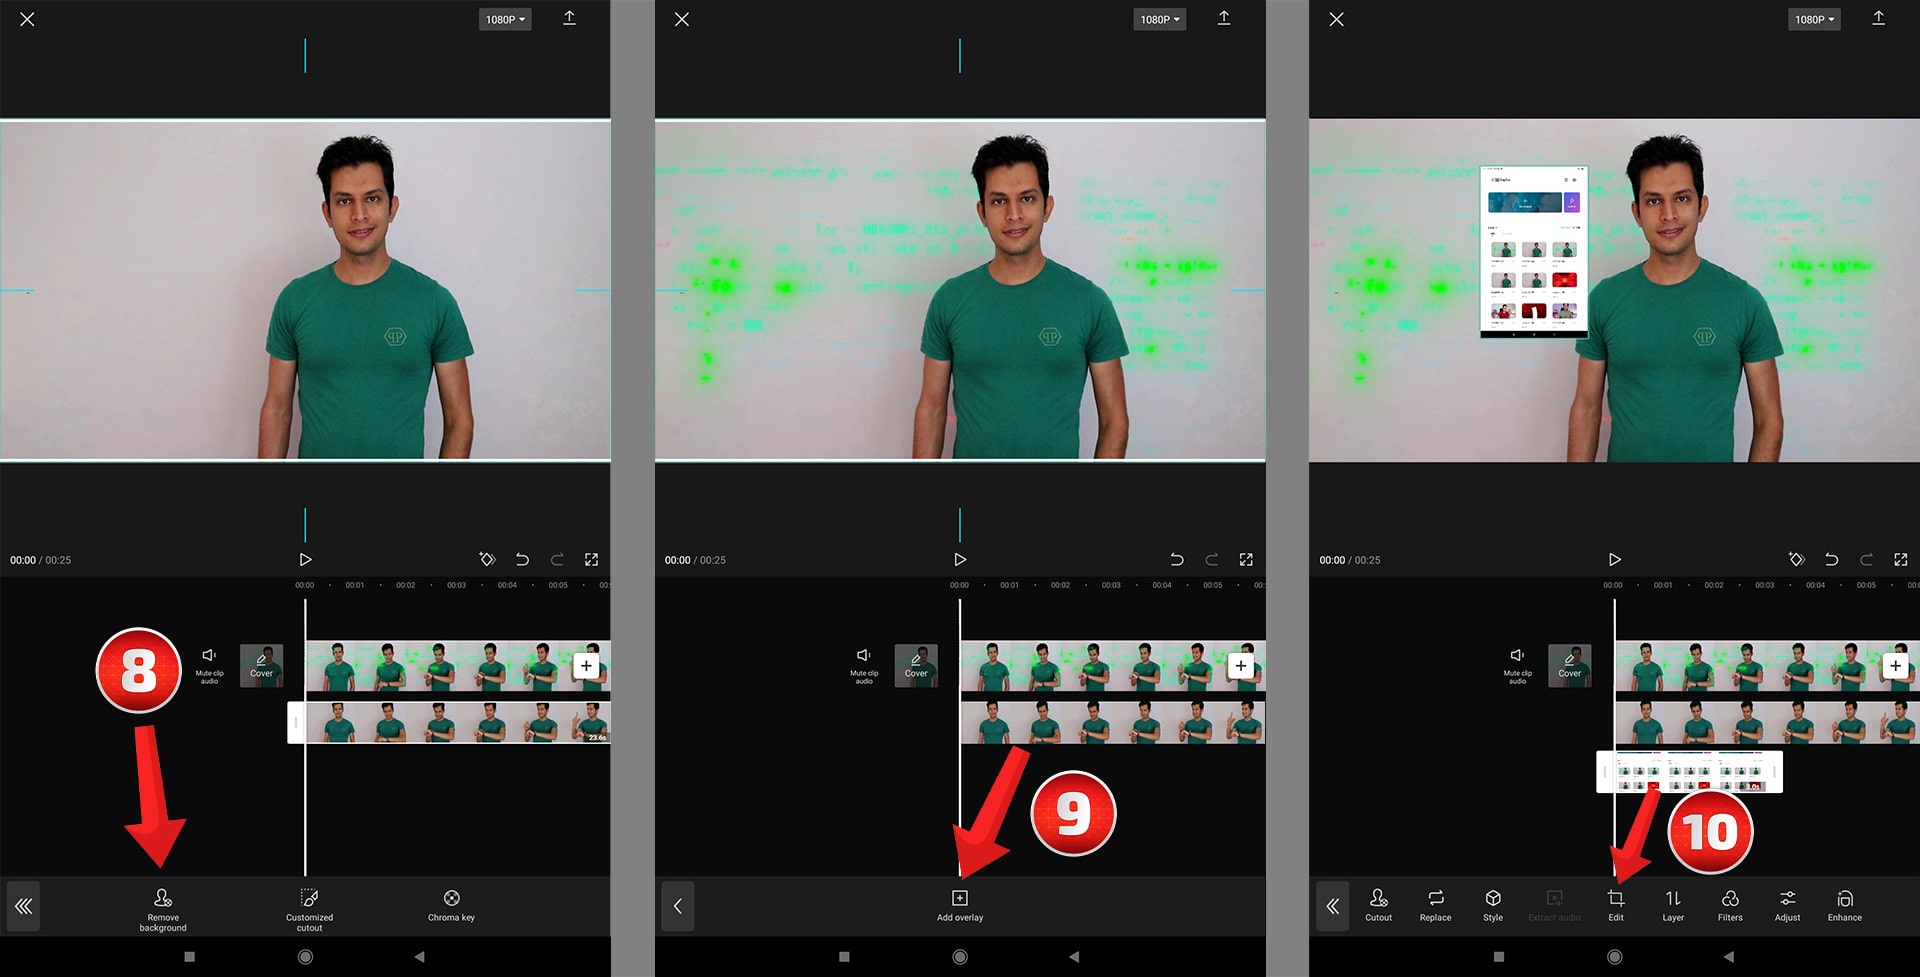 ساخت ویدیوی 3 بعدی - طراحی ویدیو هولوگرامی با برنامه کپ کات